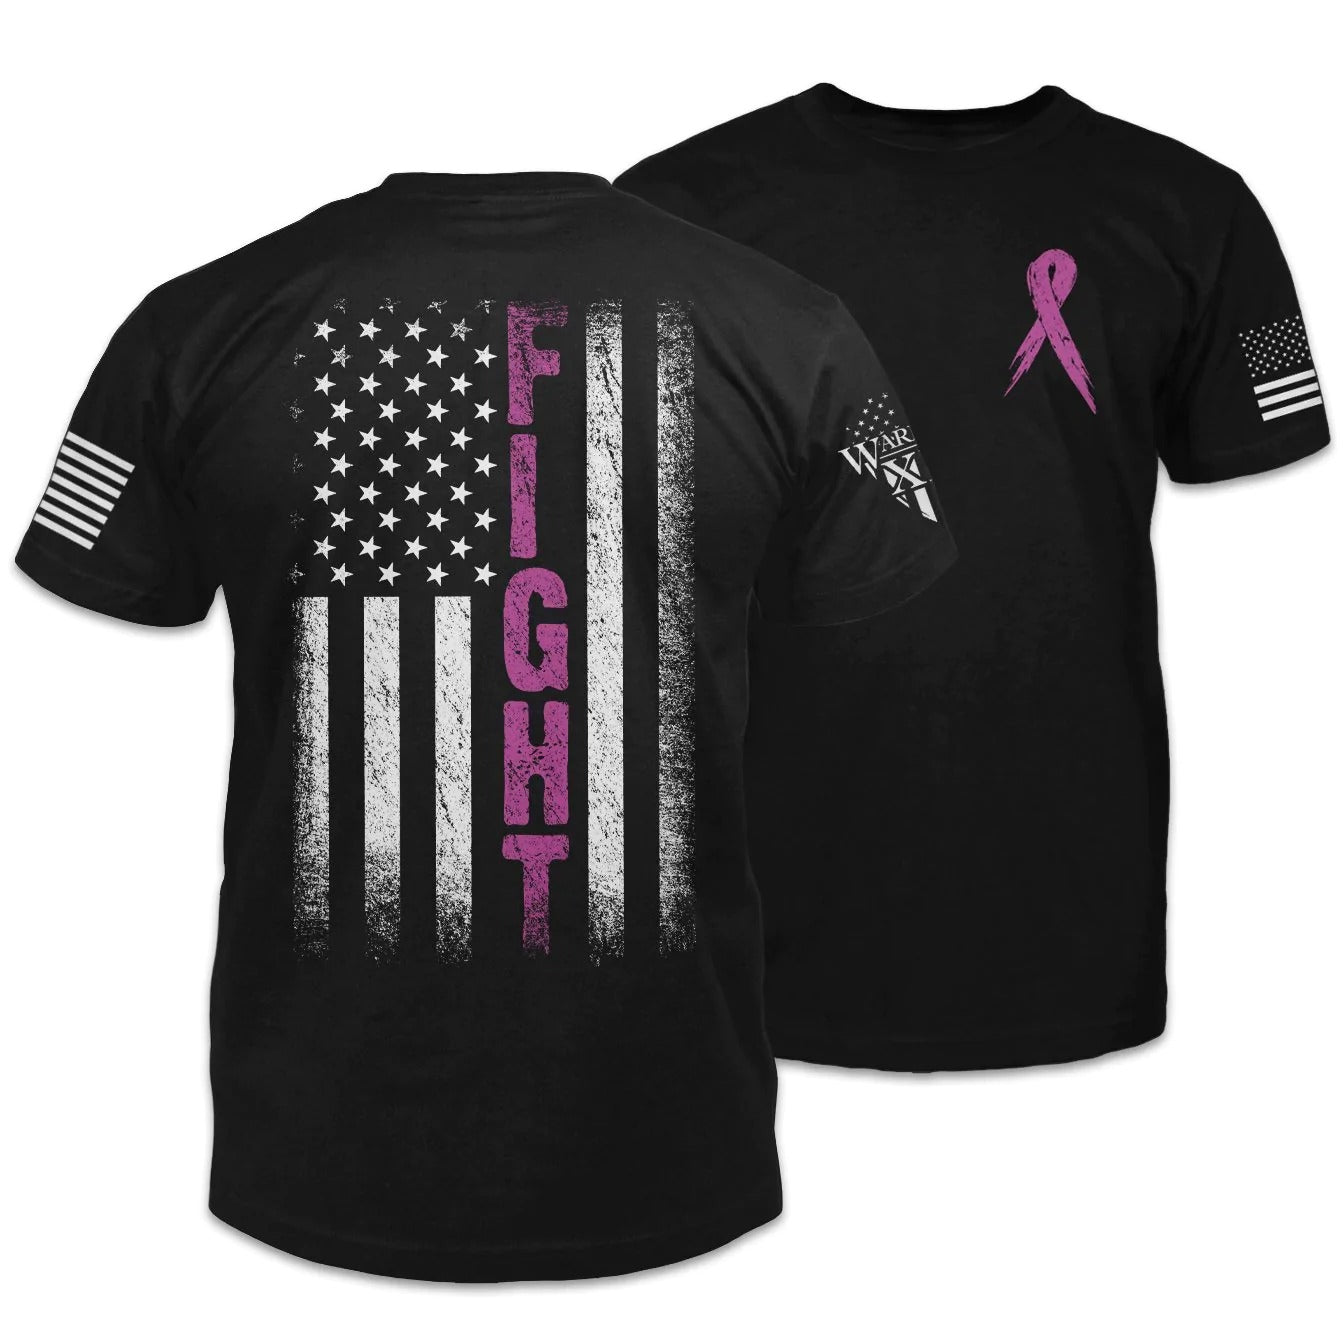 Breast Cancer Awareness T Shirt For Men Women/ Breast Cancer Warrior Shirt